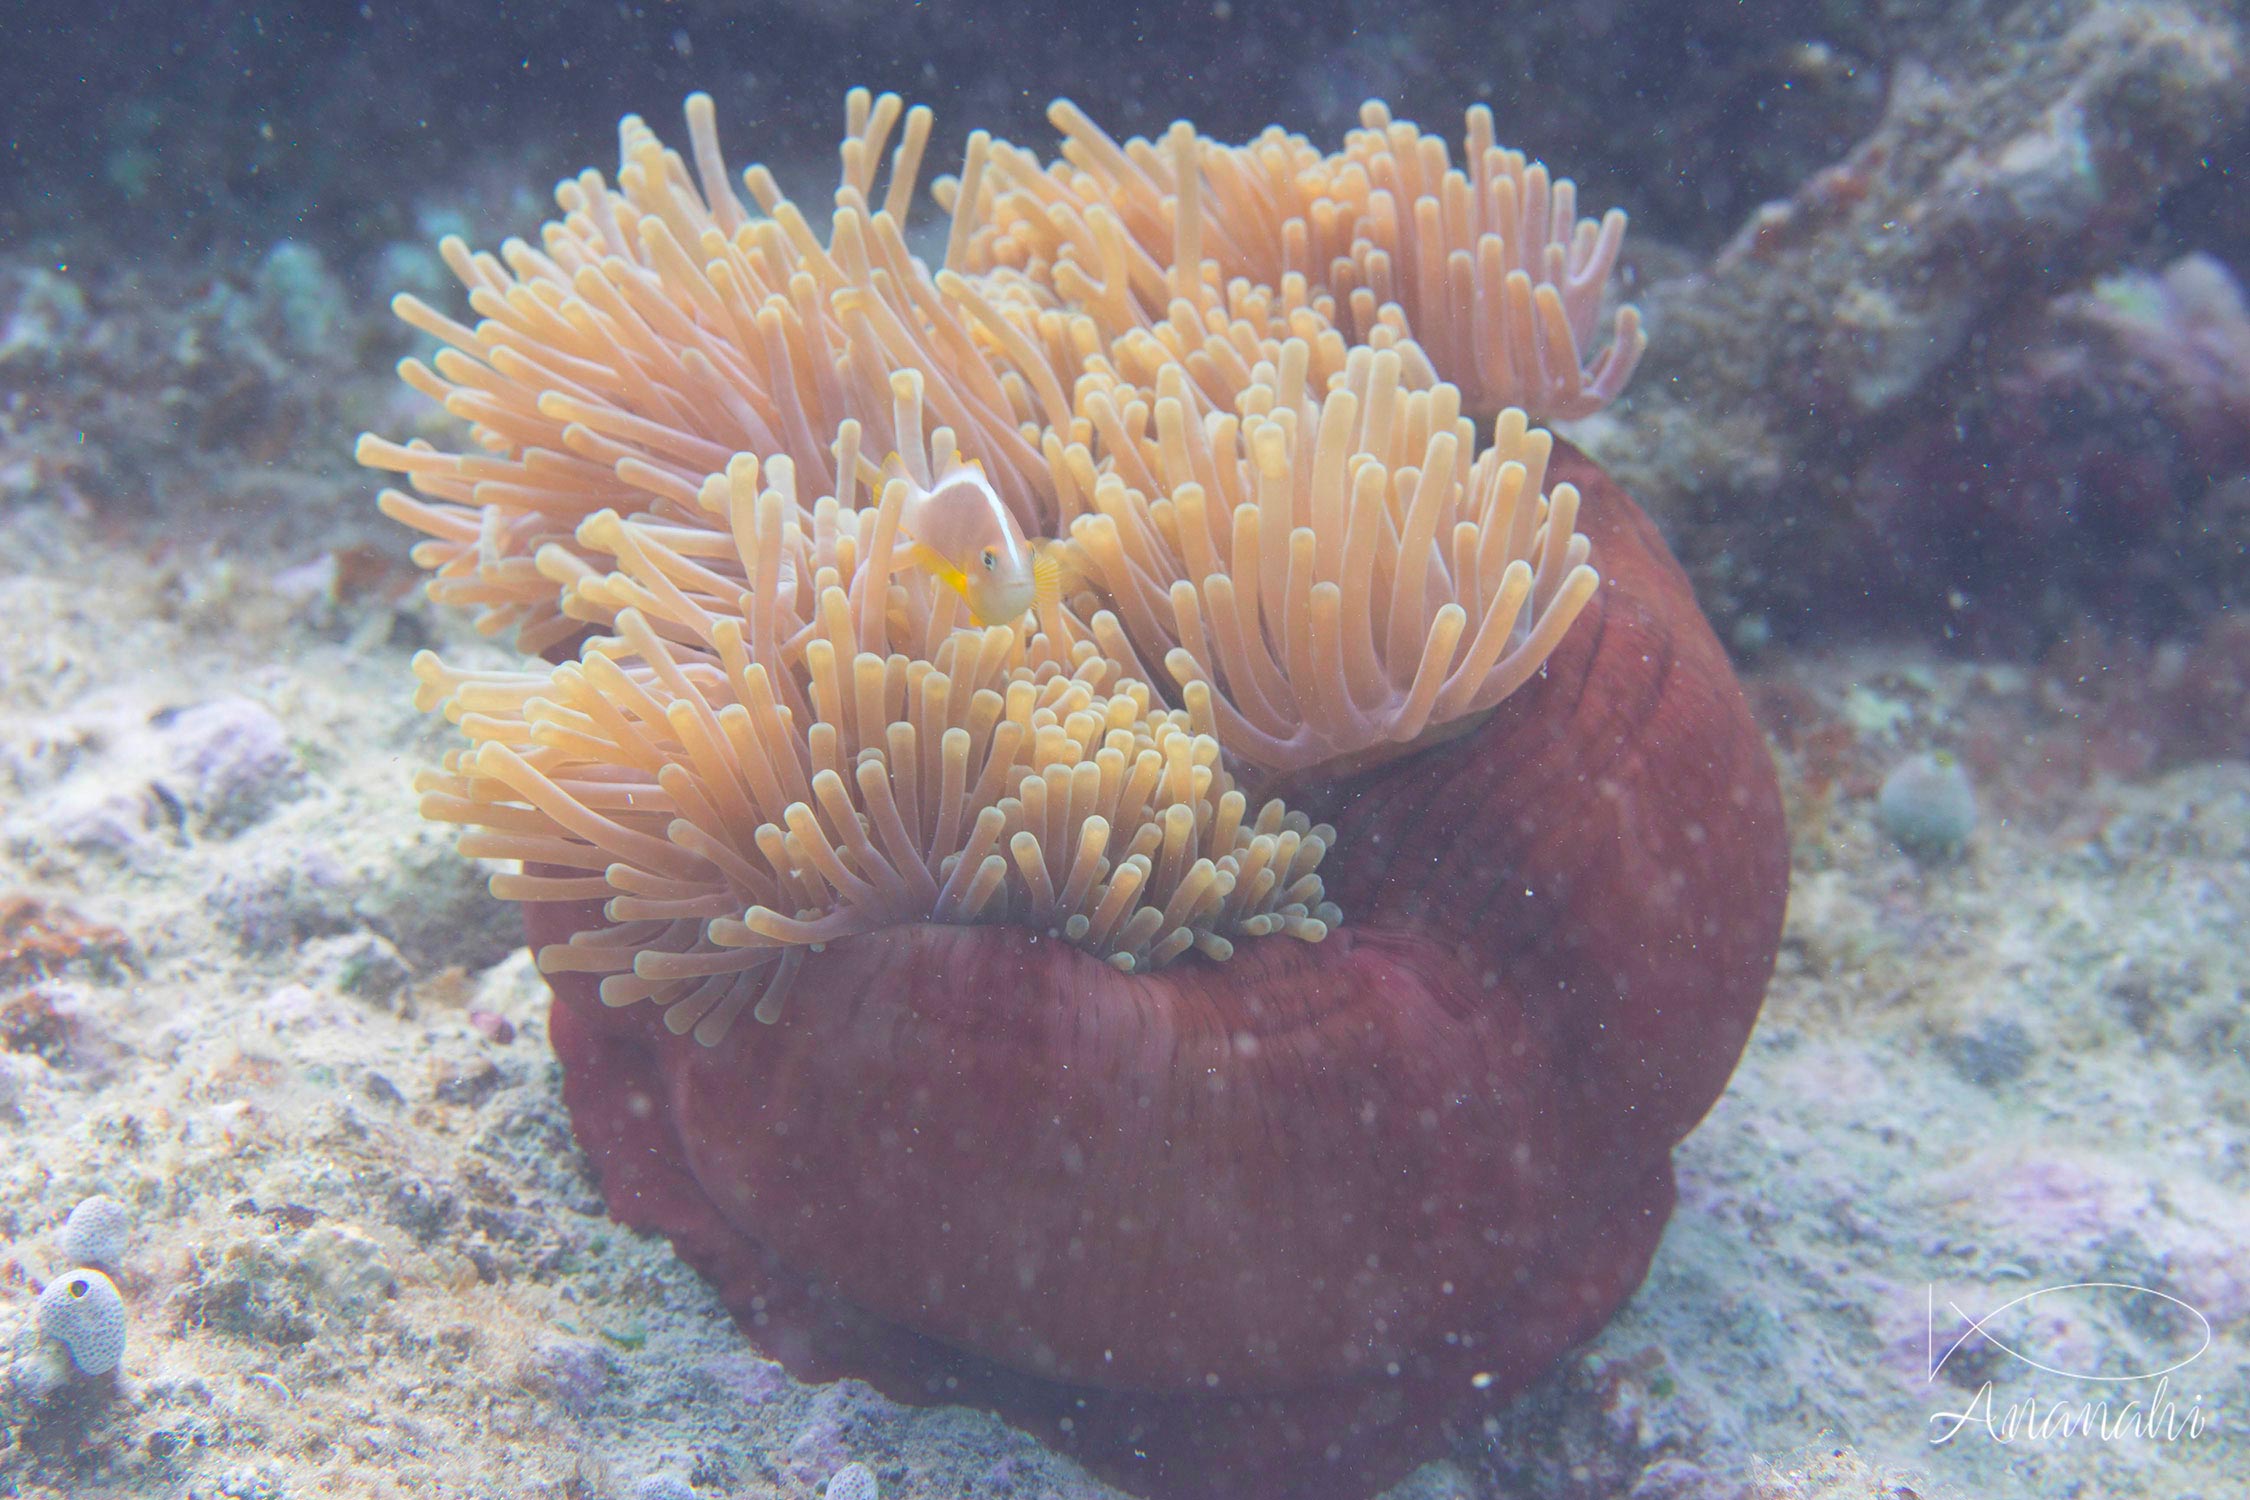 Nosetripe clownfish of Mayotte